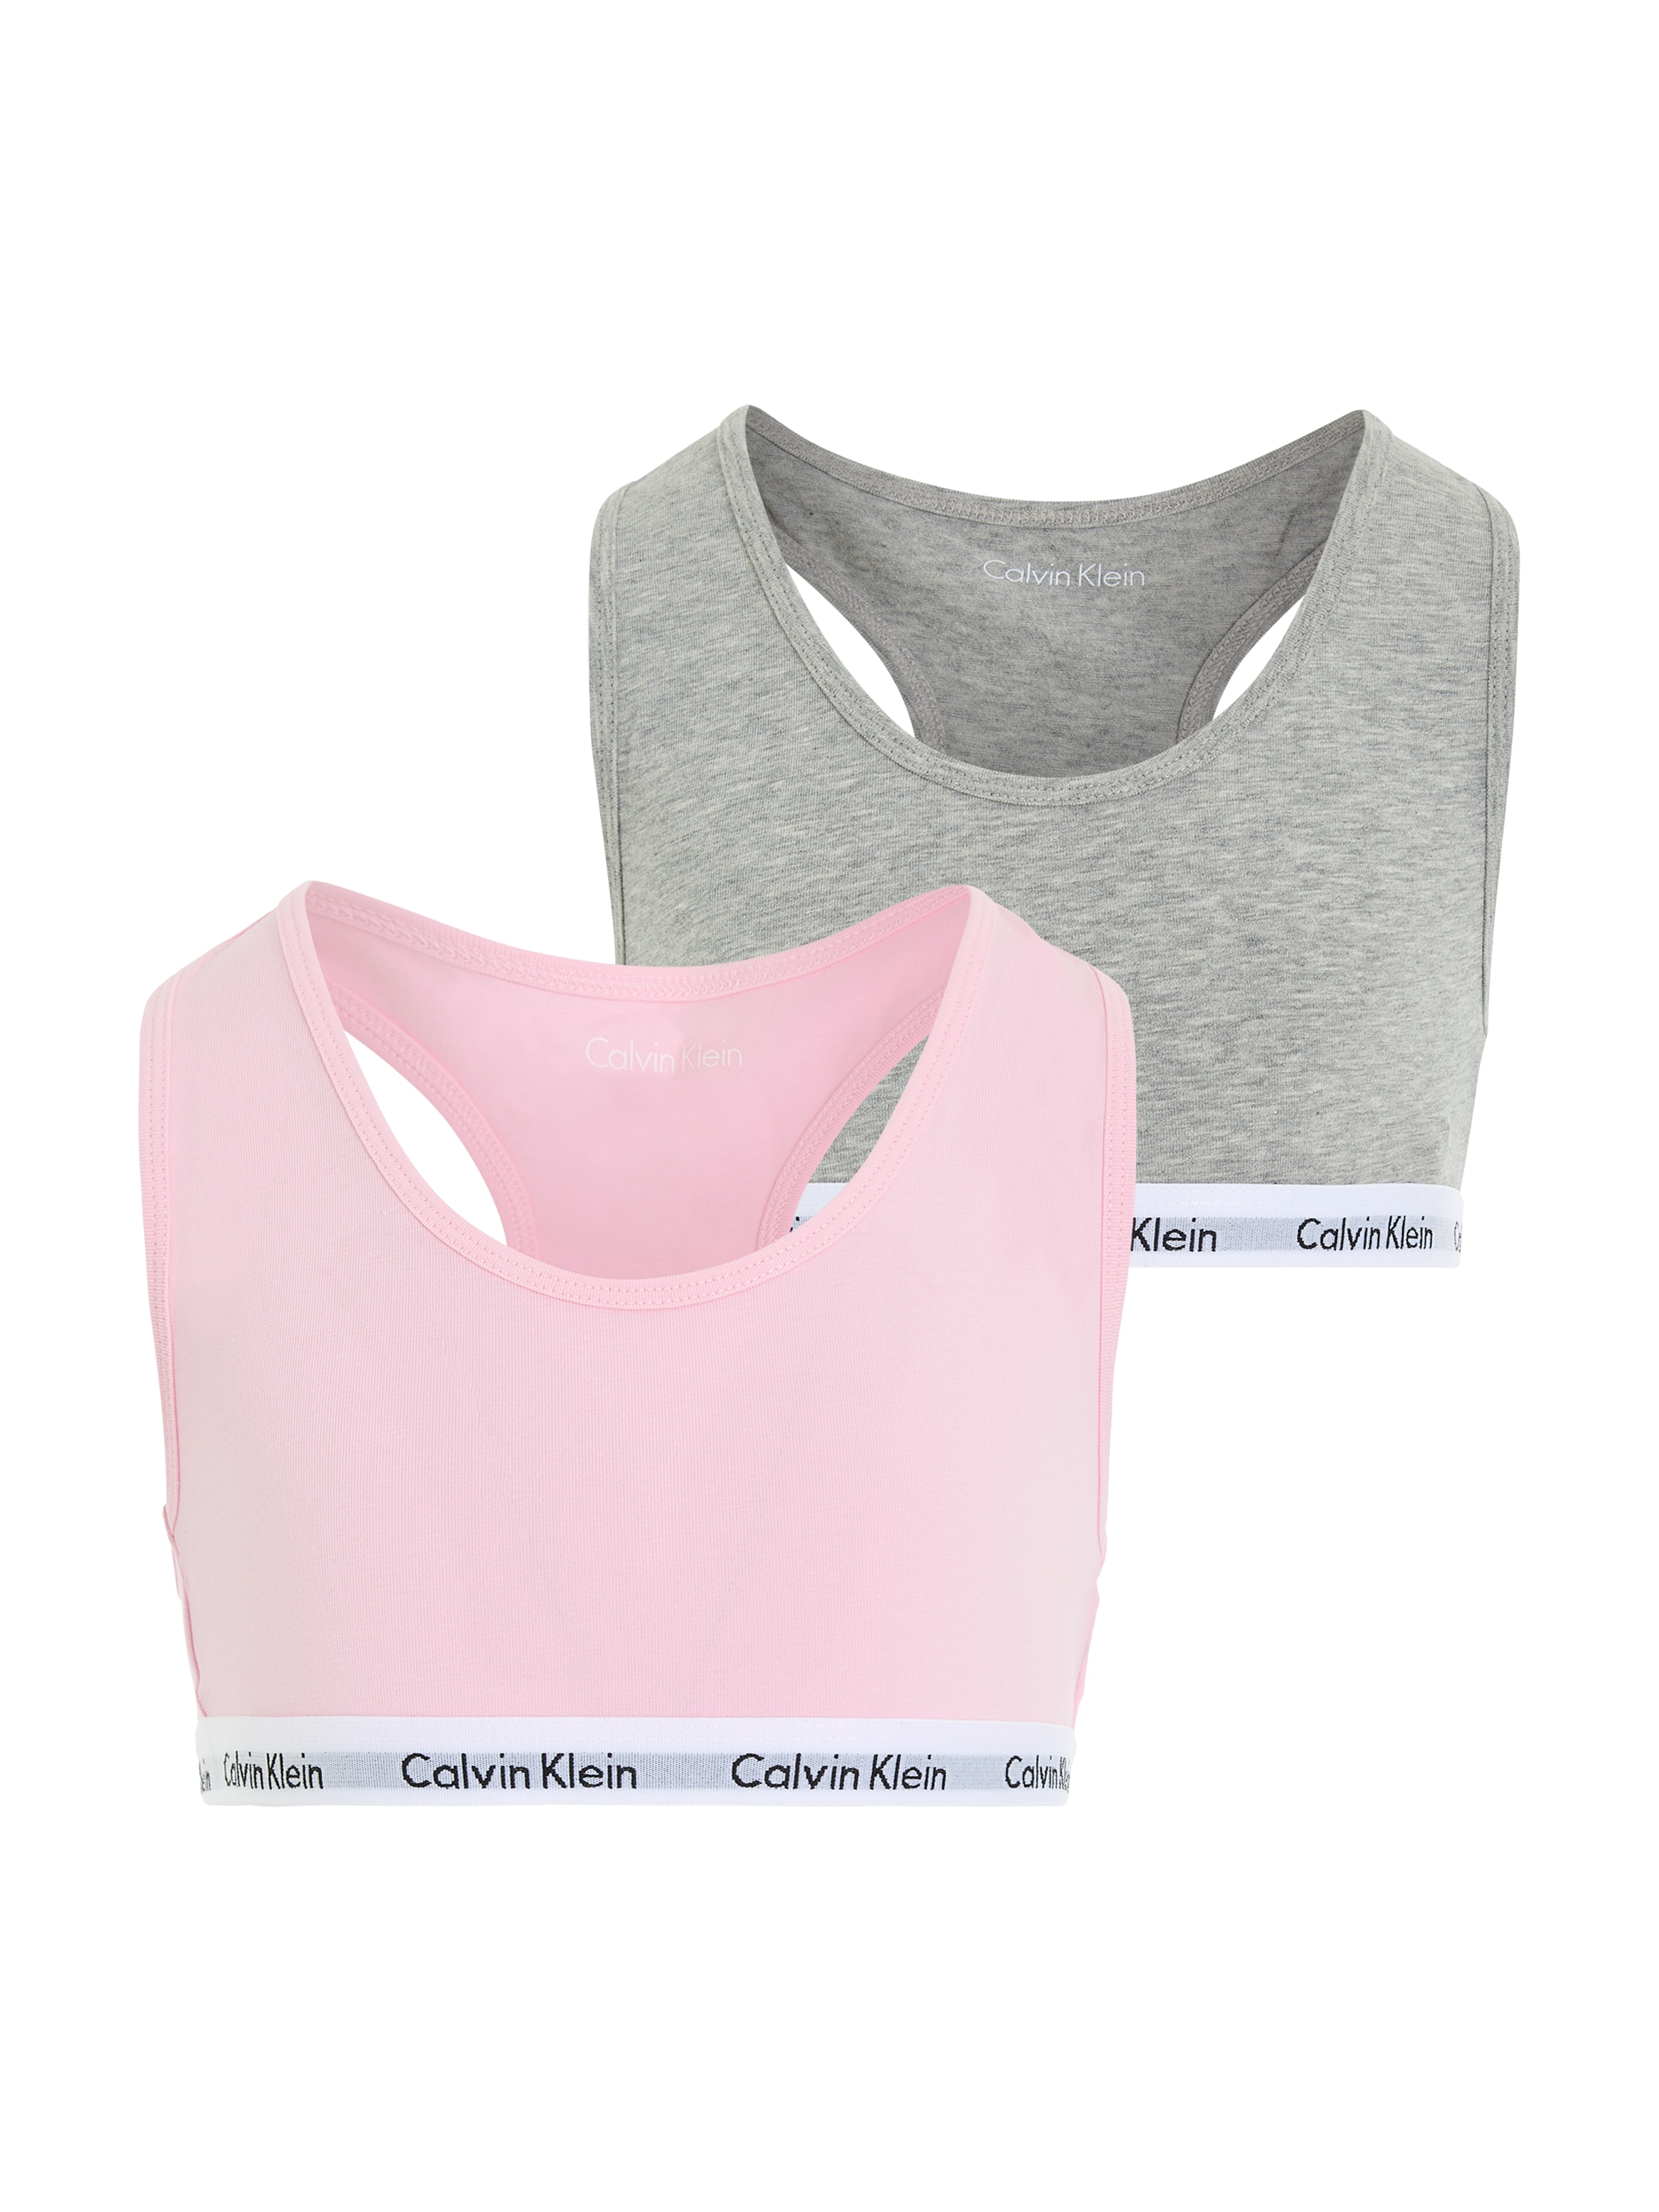 Calvin Klein Underwear Bustier, Mädchen - mit Logobund